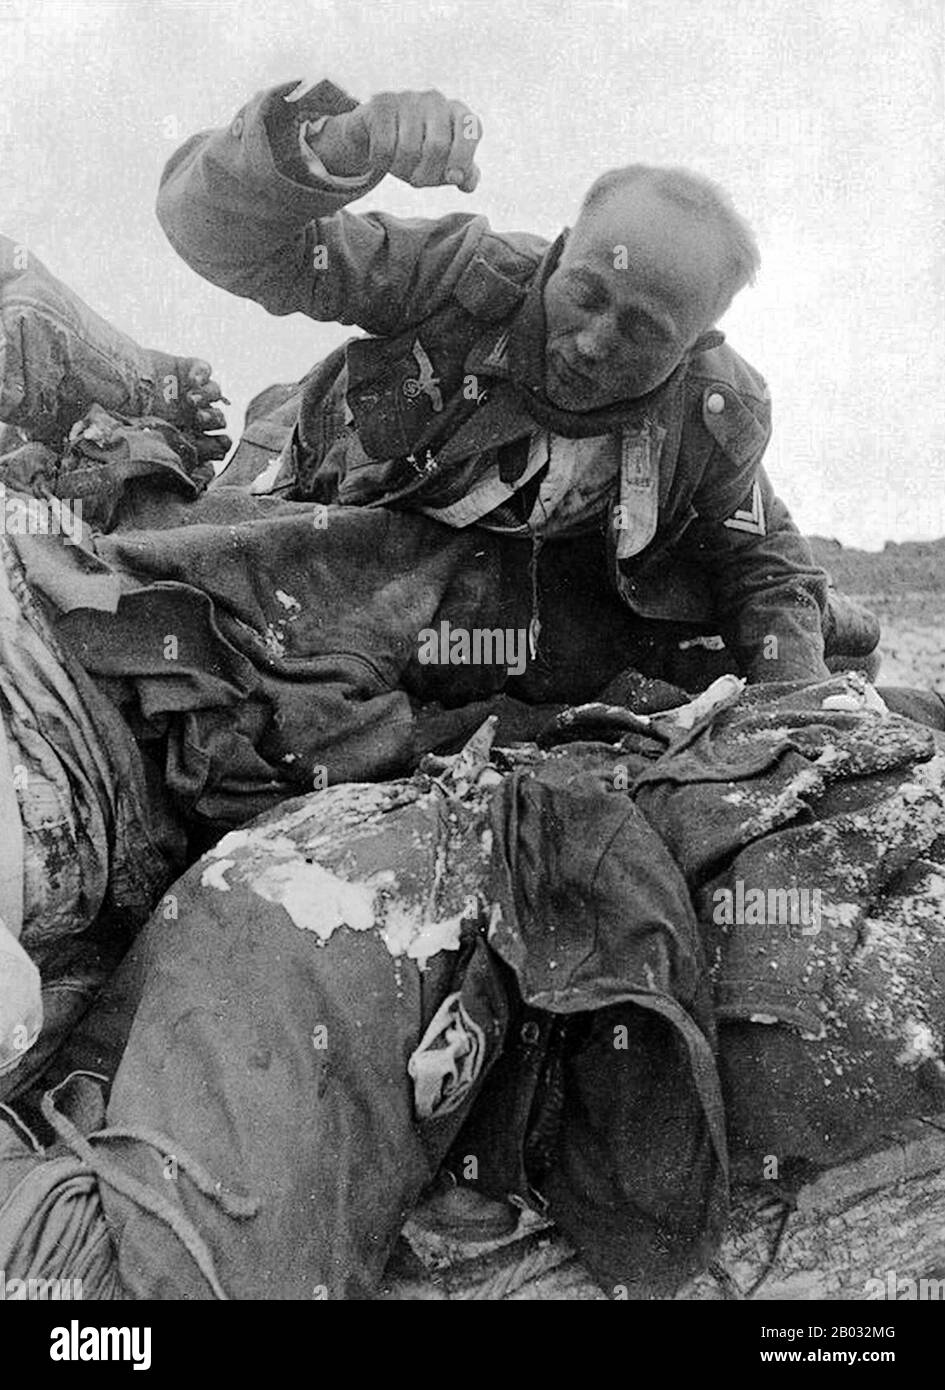 La bataille de Stalingrad (23 août 1942 – 2 février 1943) a été une grande bataille contre le front oriental de la seconde Guerre mondiale dans laquelle l'Allemagne nazie et ses alliés ont combattu l'Union soviétique pour le contrôle de la ville de Stalingrad (aujourd'hui Volgograd) dans le sud de la Russie, Près de la frontière orientale de l'Europe. Marquée par des combats de quartiers étroits et des agressions directes sur des civils par des raids aériens, elle est souvent considérée comme l'une des plus importantes (près de 2,2 millions de personnes) et des batailles les plus sanglantes (1,7 à 2 millions de blessés, tués ou capturés) de l'histoire de la guerre. Les lourdes pertes infligées à la Wehrmach allemande Banque D'Images